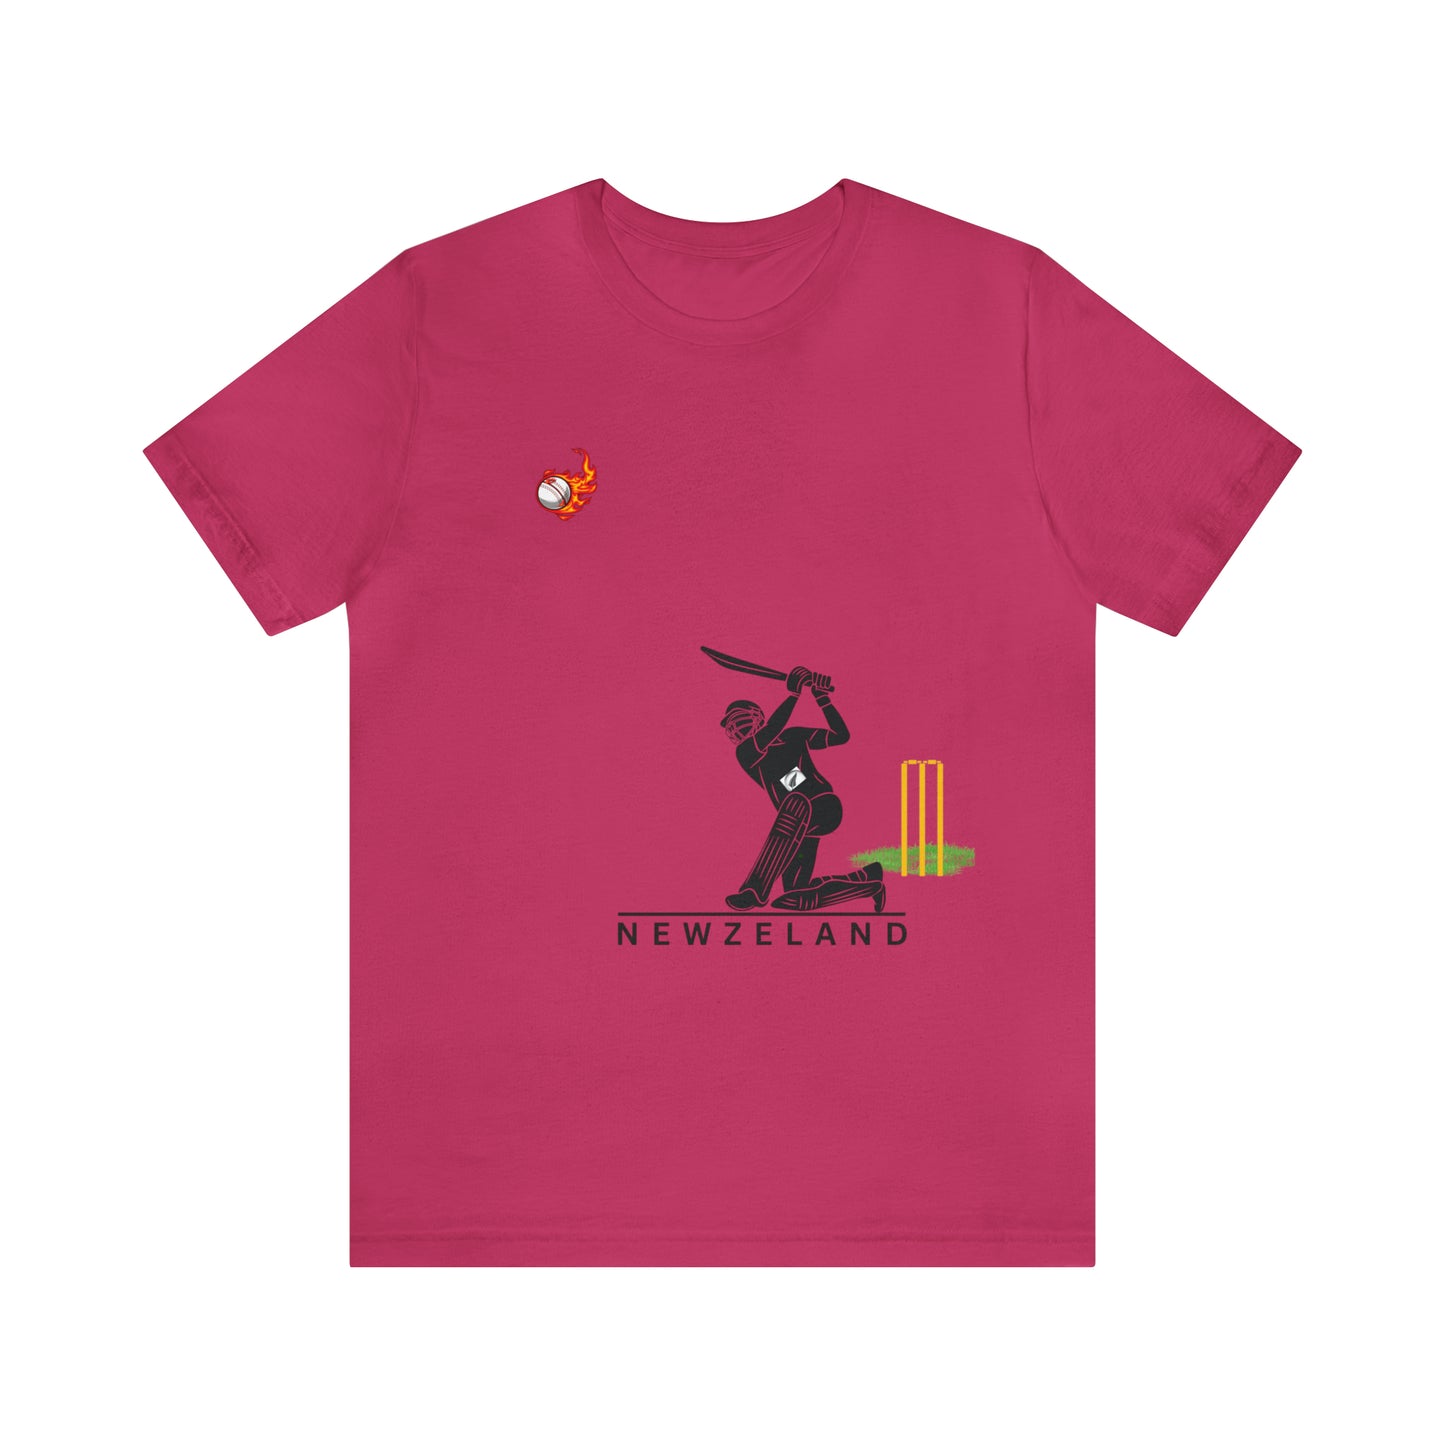 Cricket | 000132 |Unisex Jersey Short Sleeve Tee